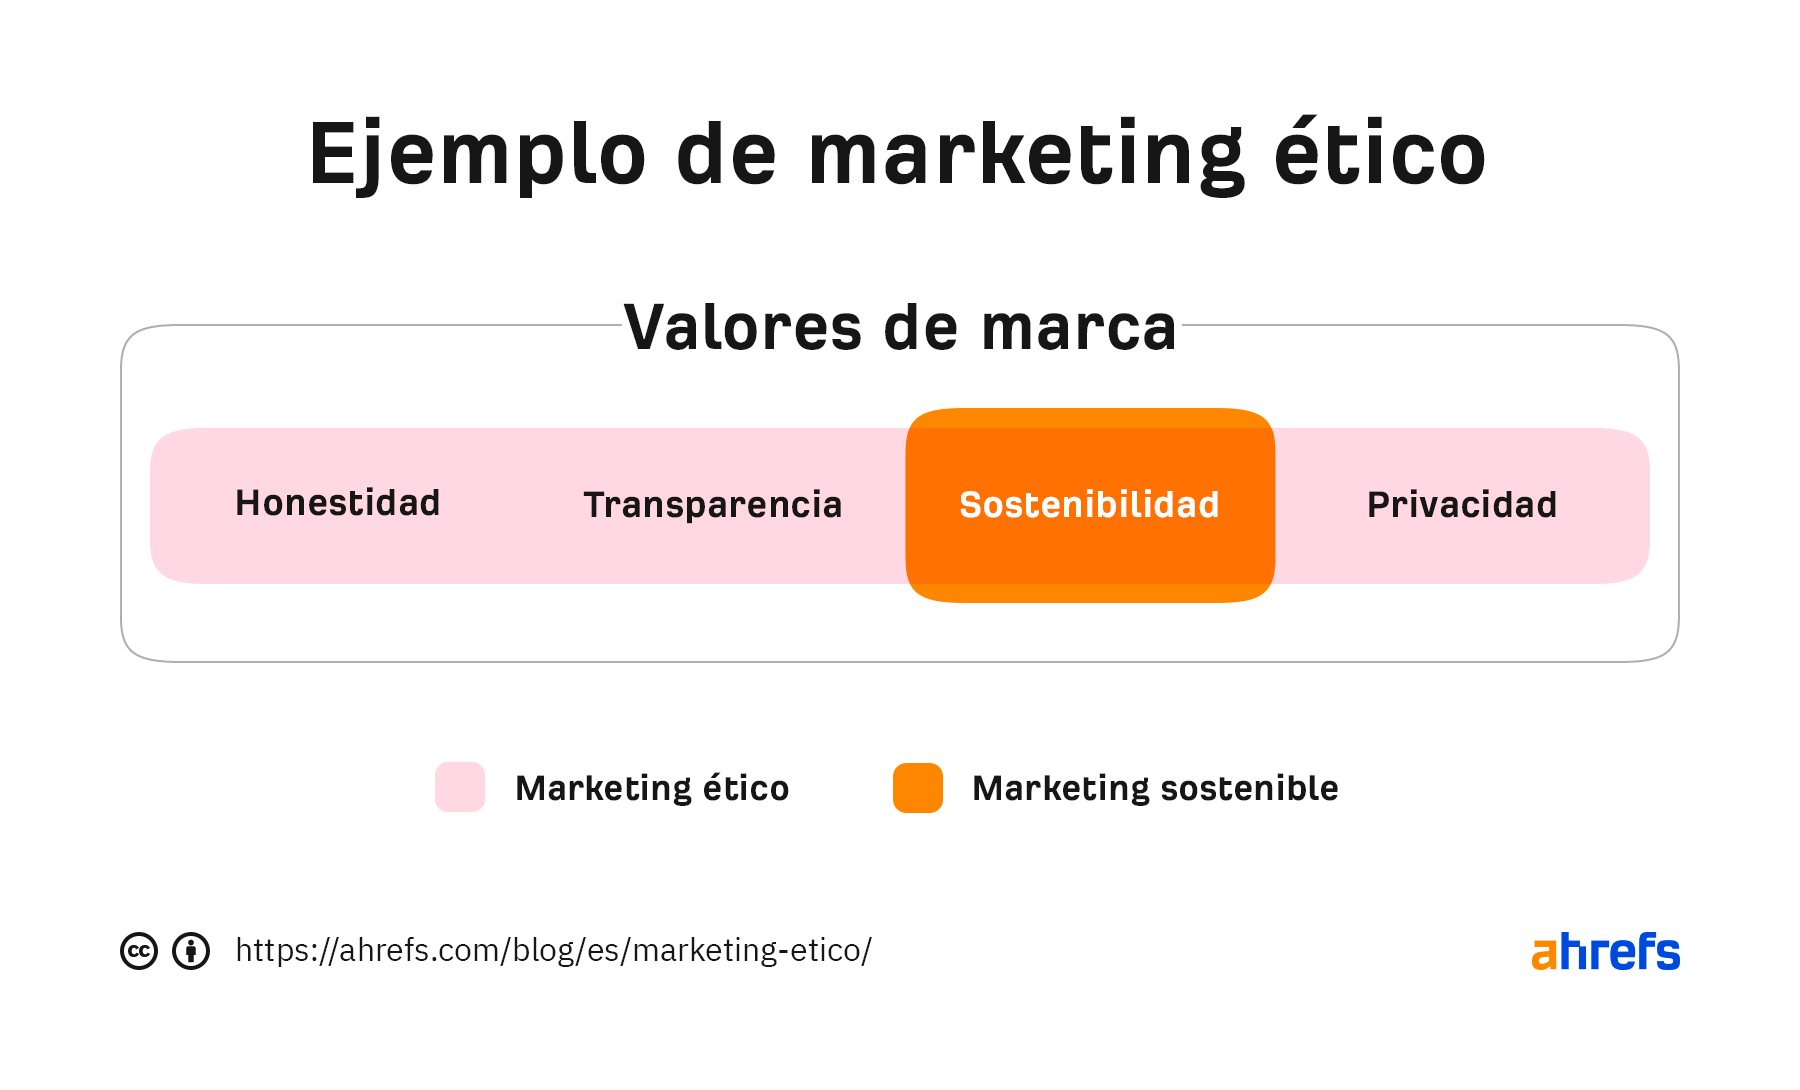 Un gráfico sencillo que muestra la sostenibilidad como un subconjunto del marketing ético.